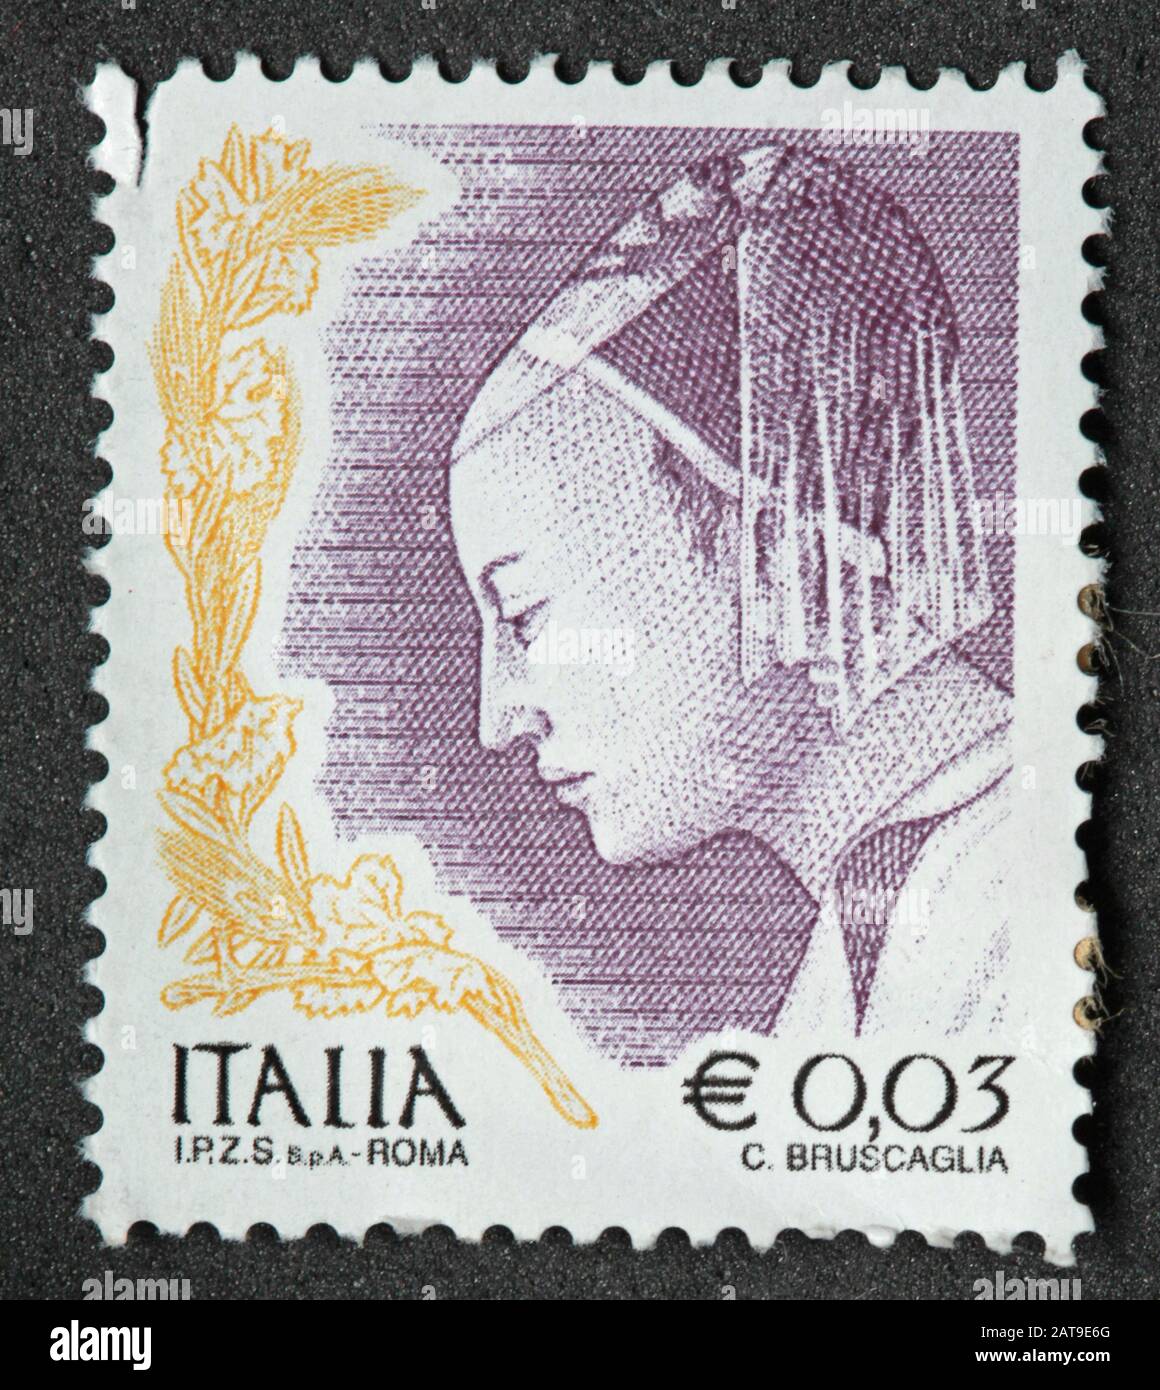 Timbro italiano, poste Italia usato e affrancato, Italia Roma Stamp E0.03 C.Bruscaglia Foto Stock